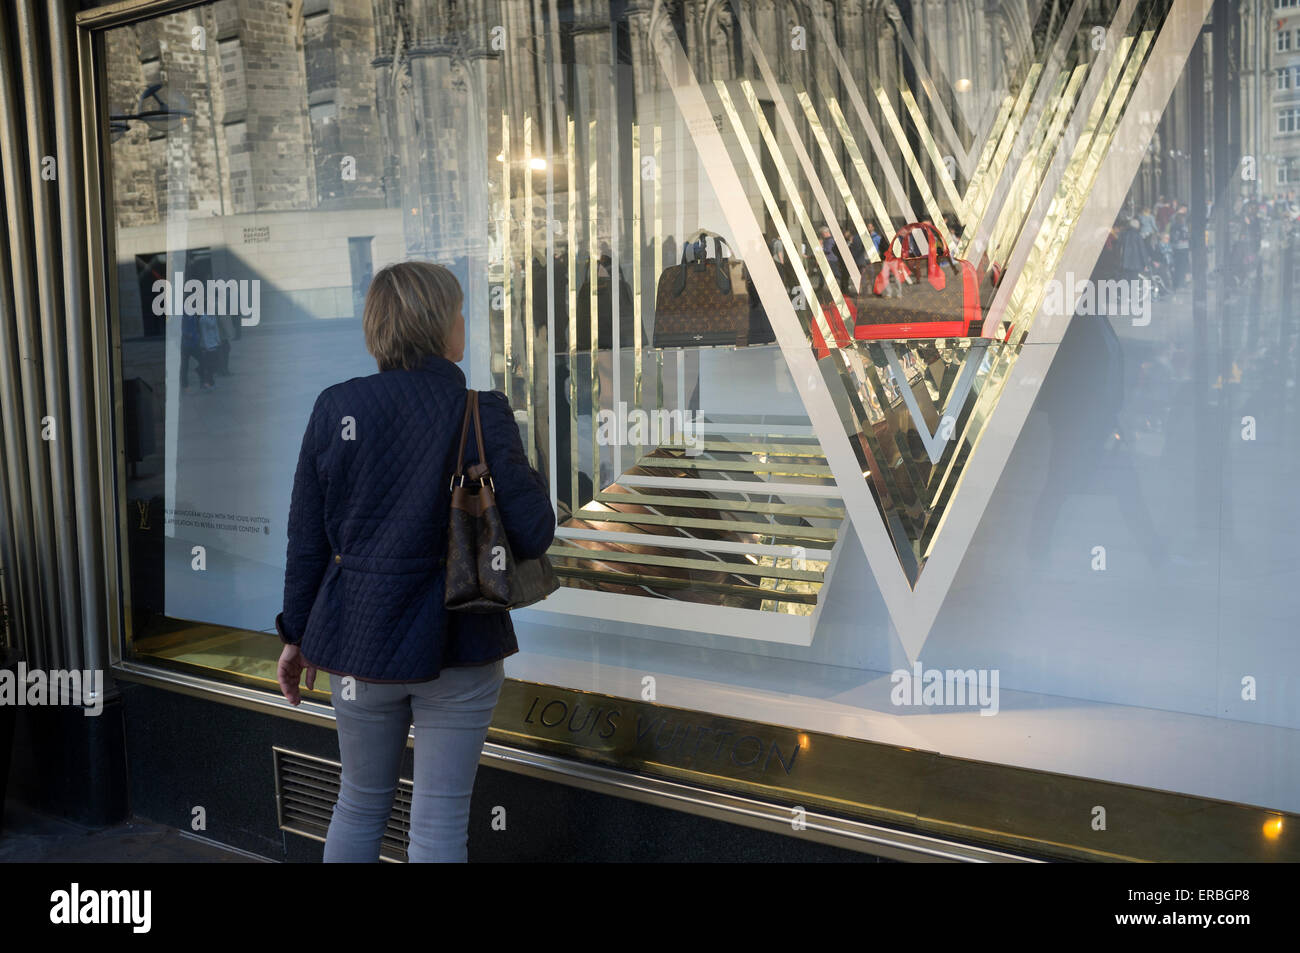 Louis Vuitton store – Stock Editorial Photo © teamtime #128287920